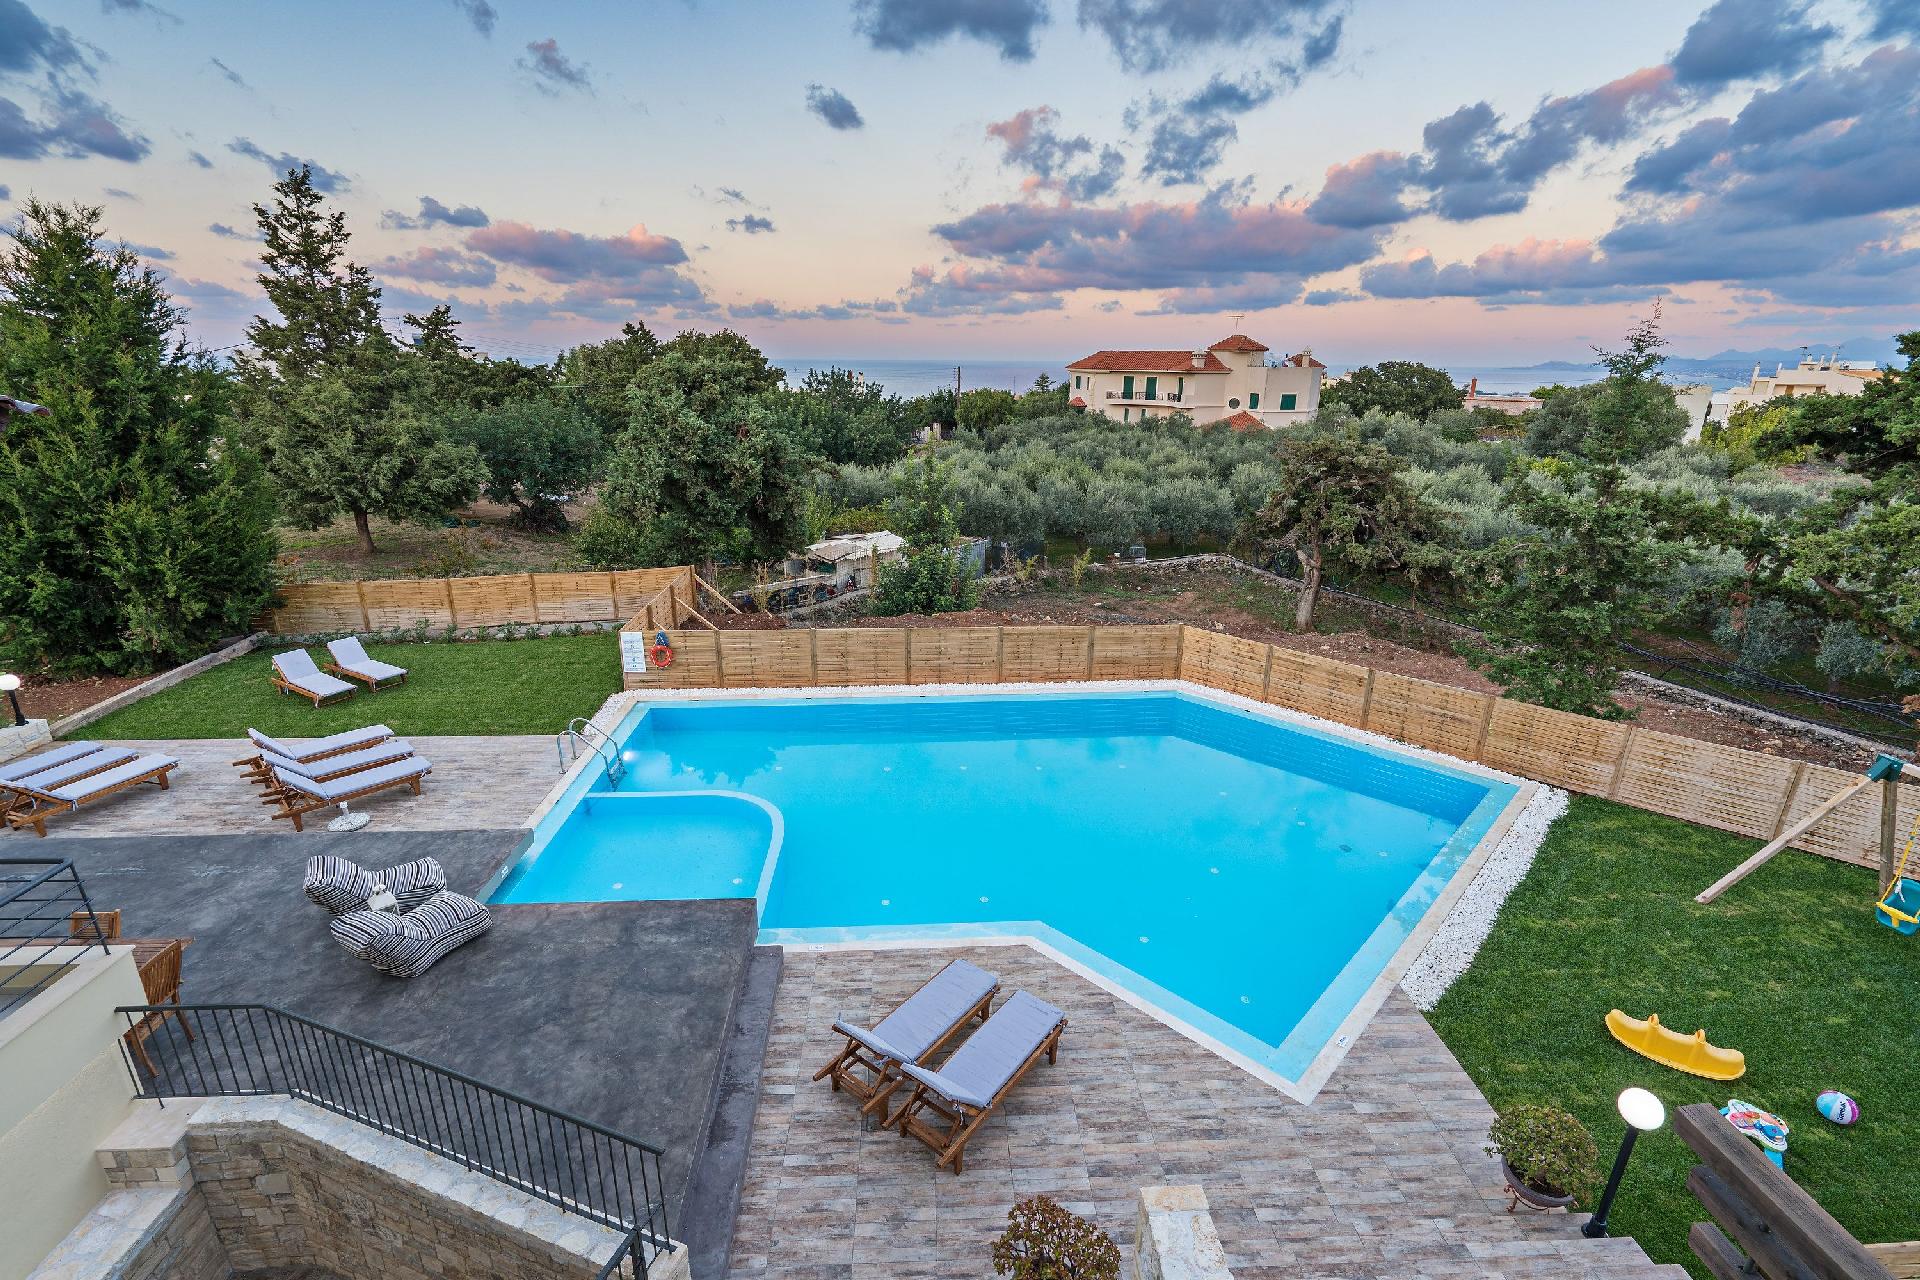 Ferienhaus mit Privatpool für 16 Personen ca. Ferienhaus in Griechenland